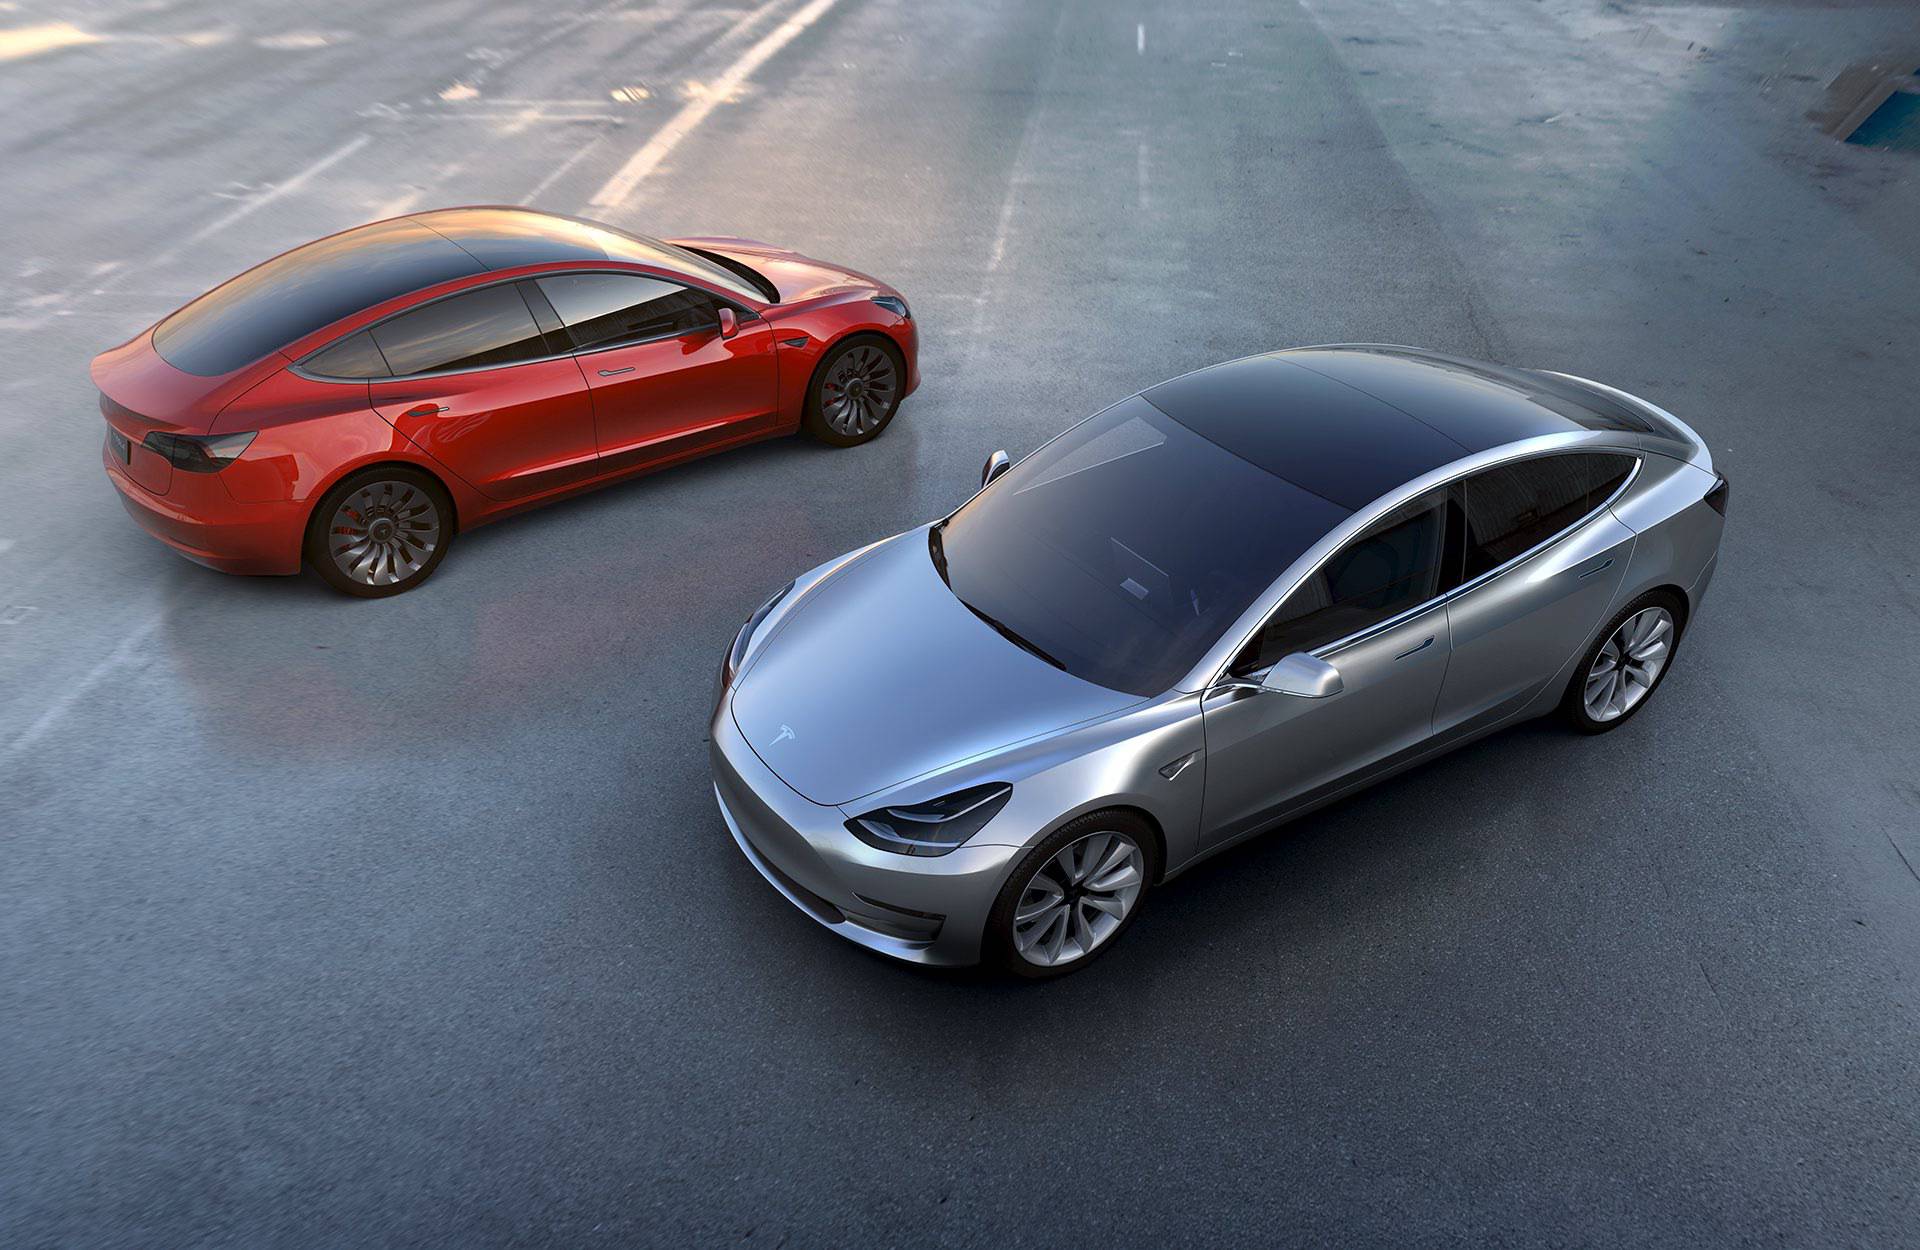 Uz aute, Tesla želi proizvoditi i električne autobuse i kamione